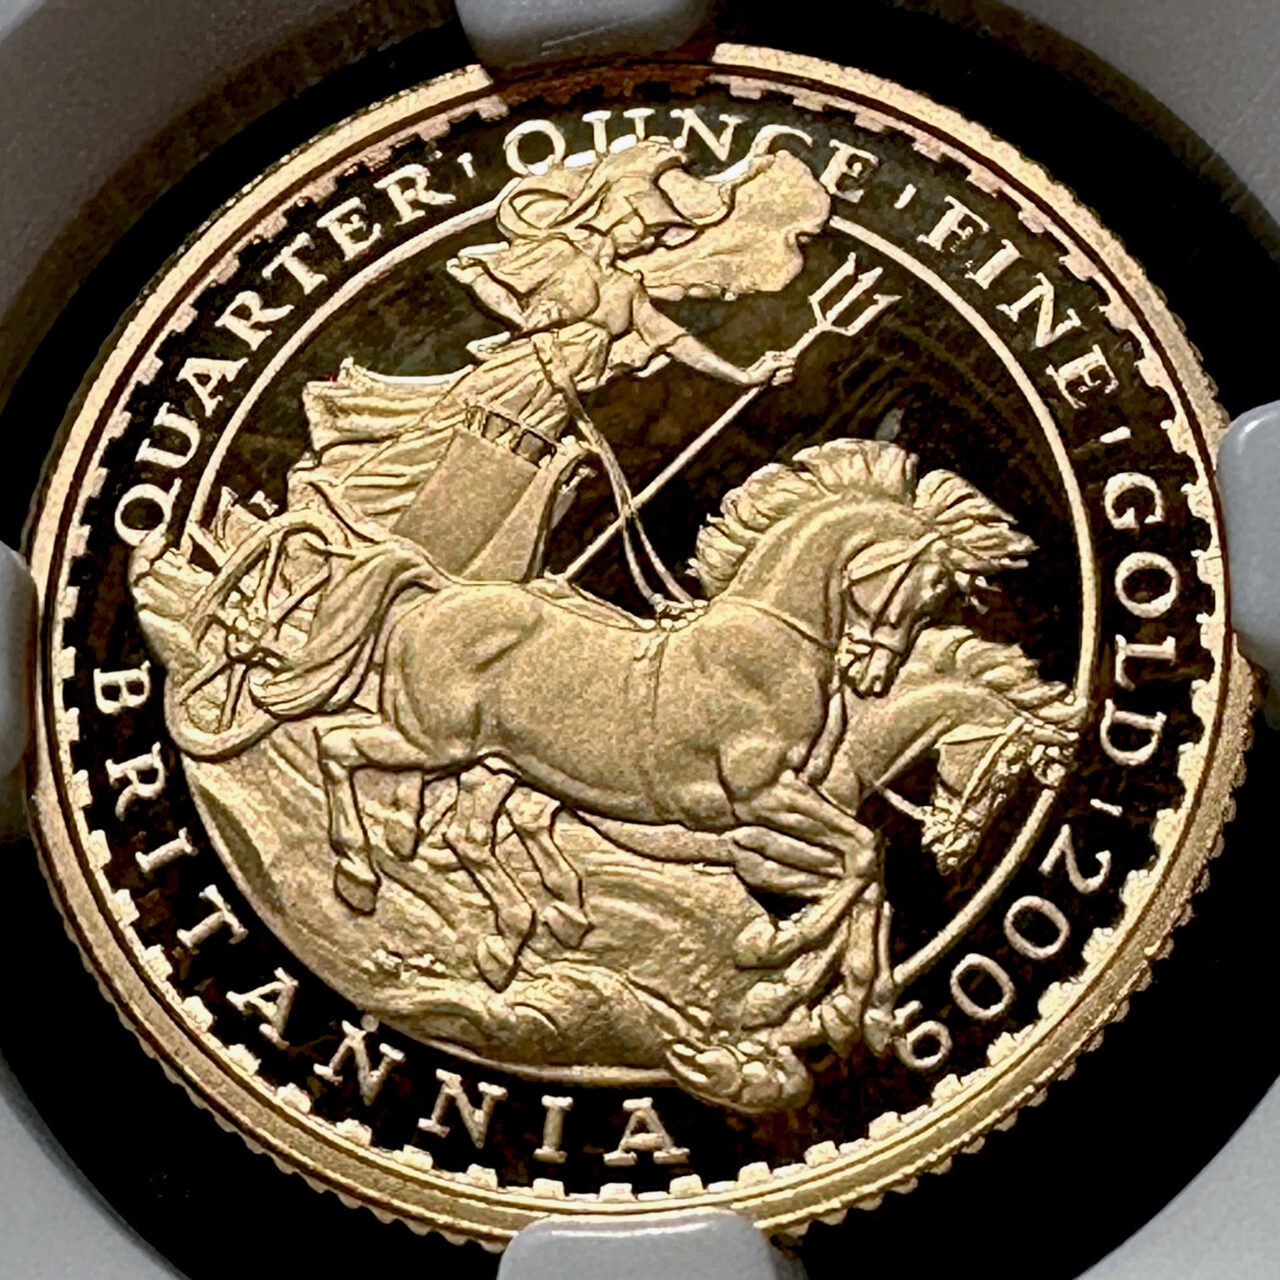 専用　英国王立造幣局 2009 年 ロイヤルミント 未流通 コイン コレクションご検討よろしくお願いいたします